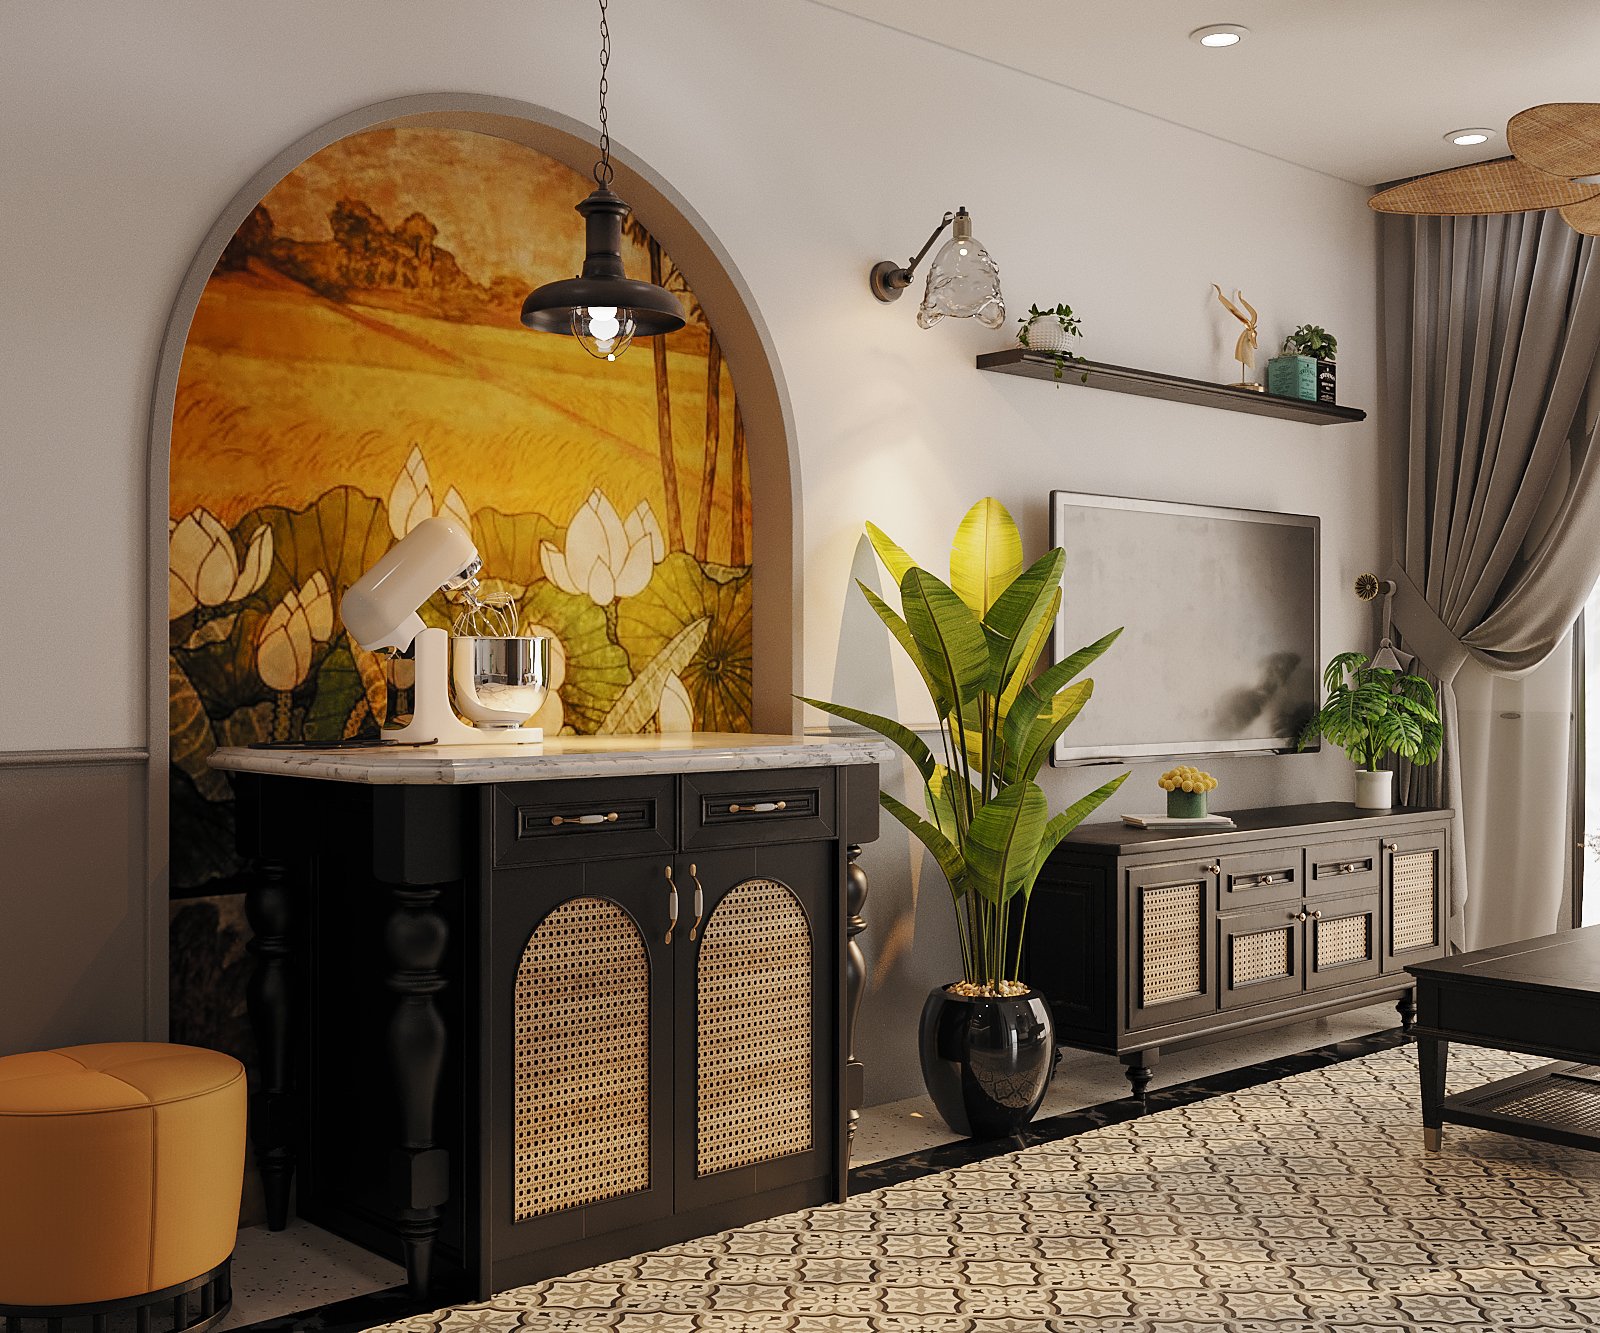 Tranh tường hoa sen vẽ gọn trong khung vòm tạo điểm nhấn ở không gian chuyển tiếp giữa phòng khách và khu bếp nấu phía trong.